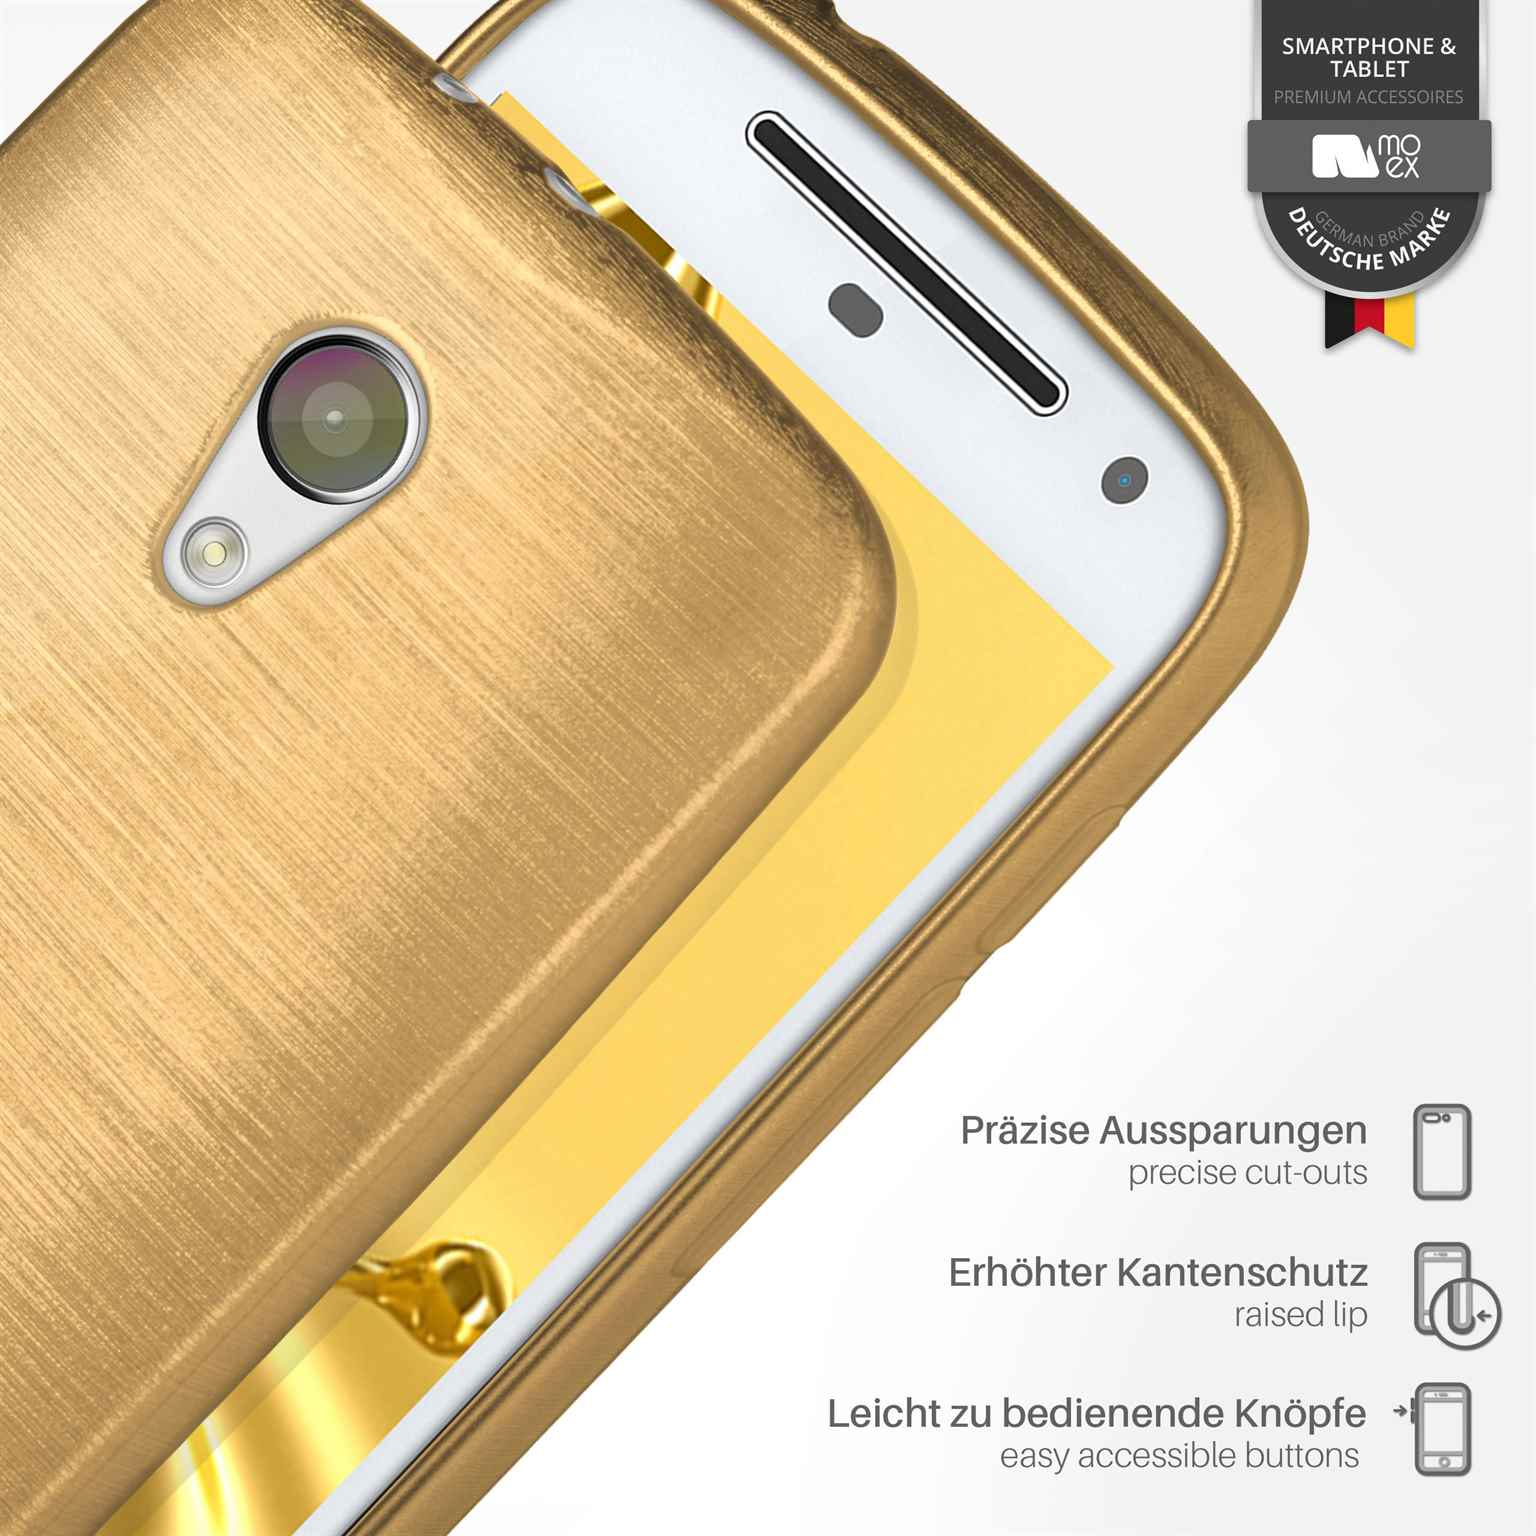 MOEX Backcover, Motorola, Ivory-Gold Moto Brushed Case, G2,